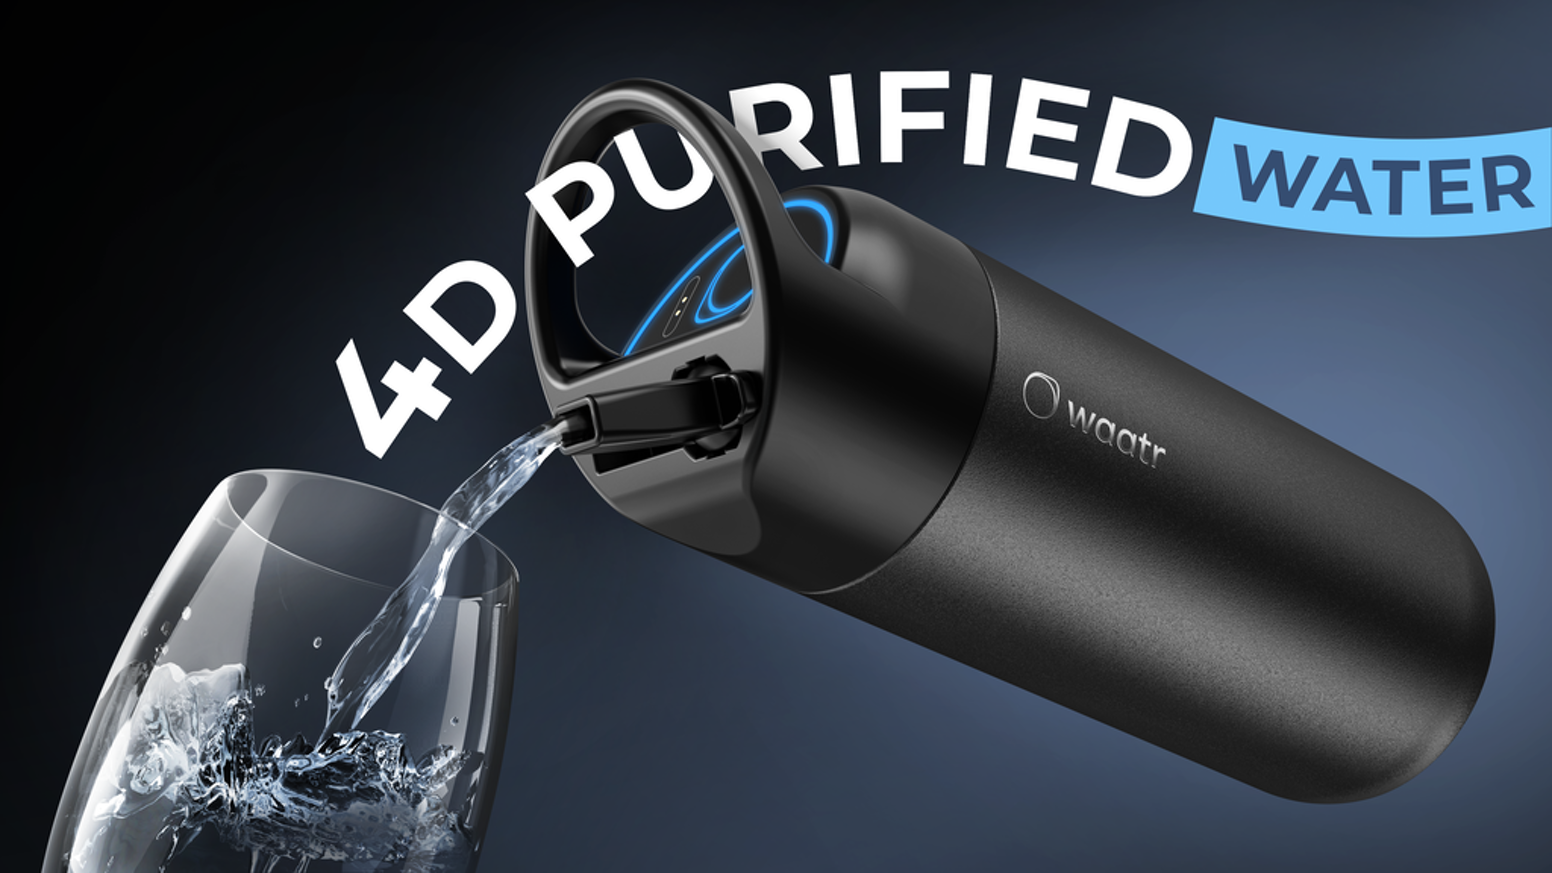 WAATR: Chiếc bình lọc nước với công nghệ 4D đầu tiên trên thế giới đến từ Kickstarter